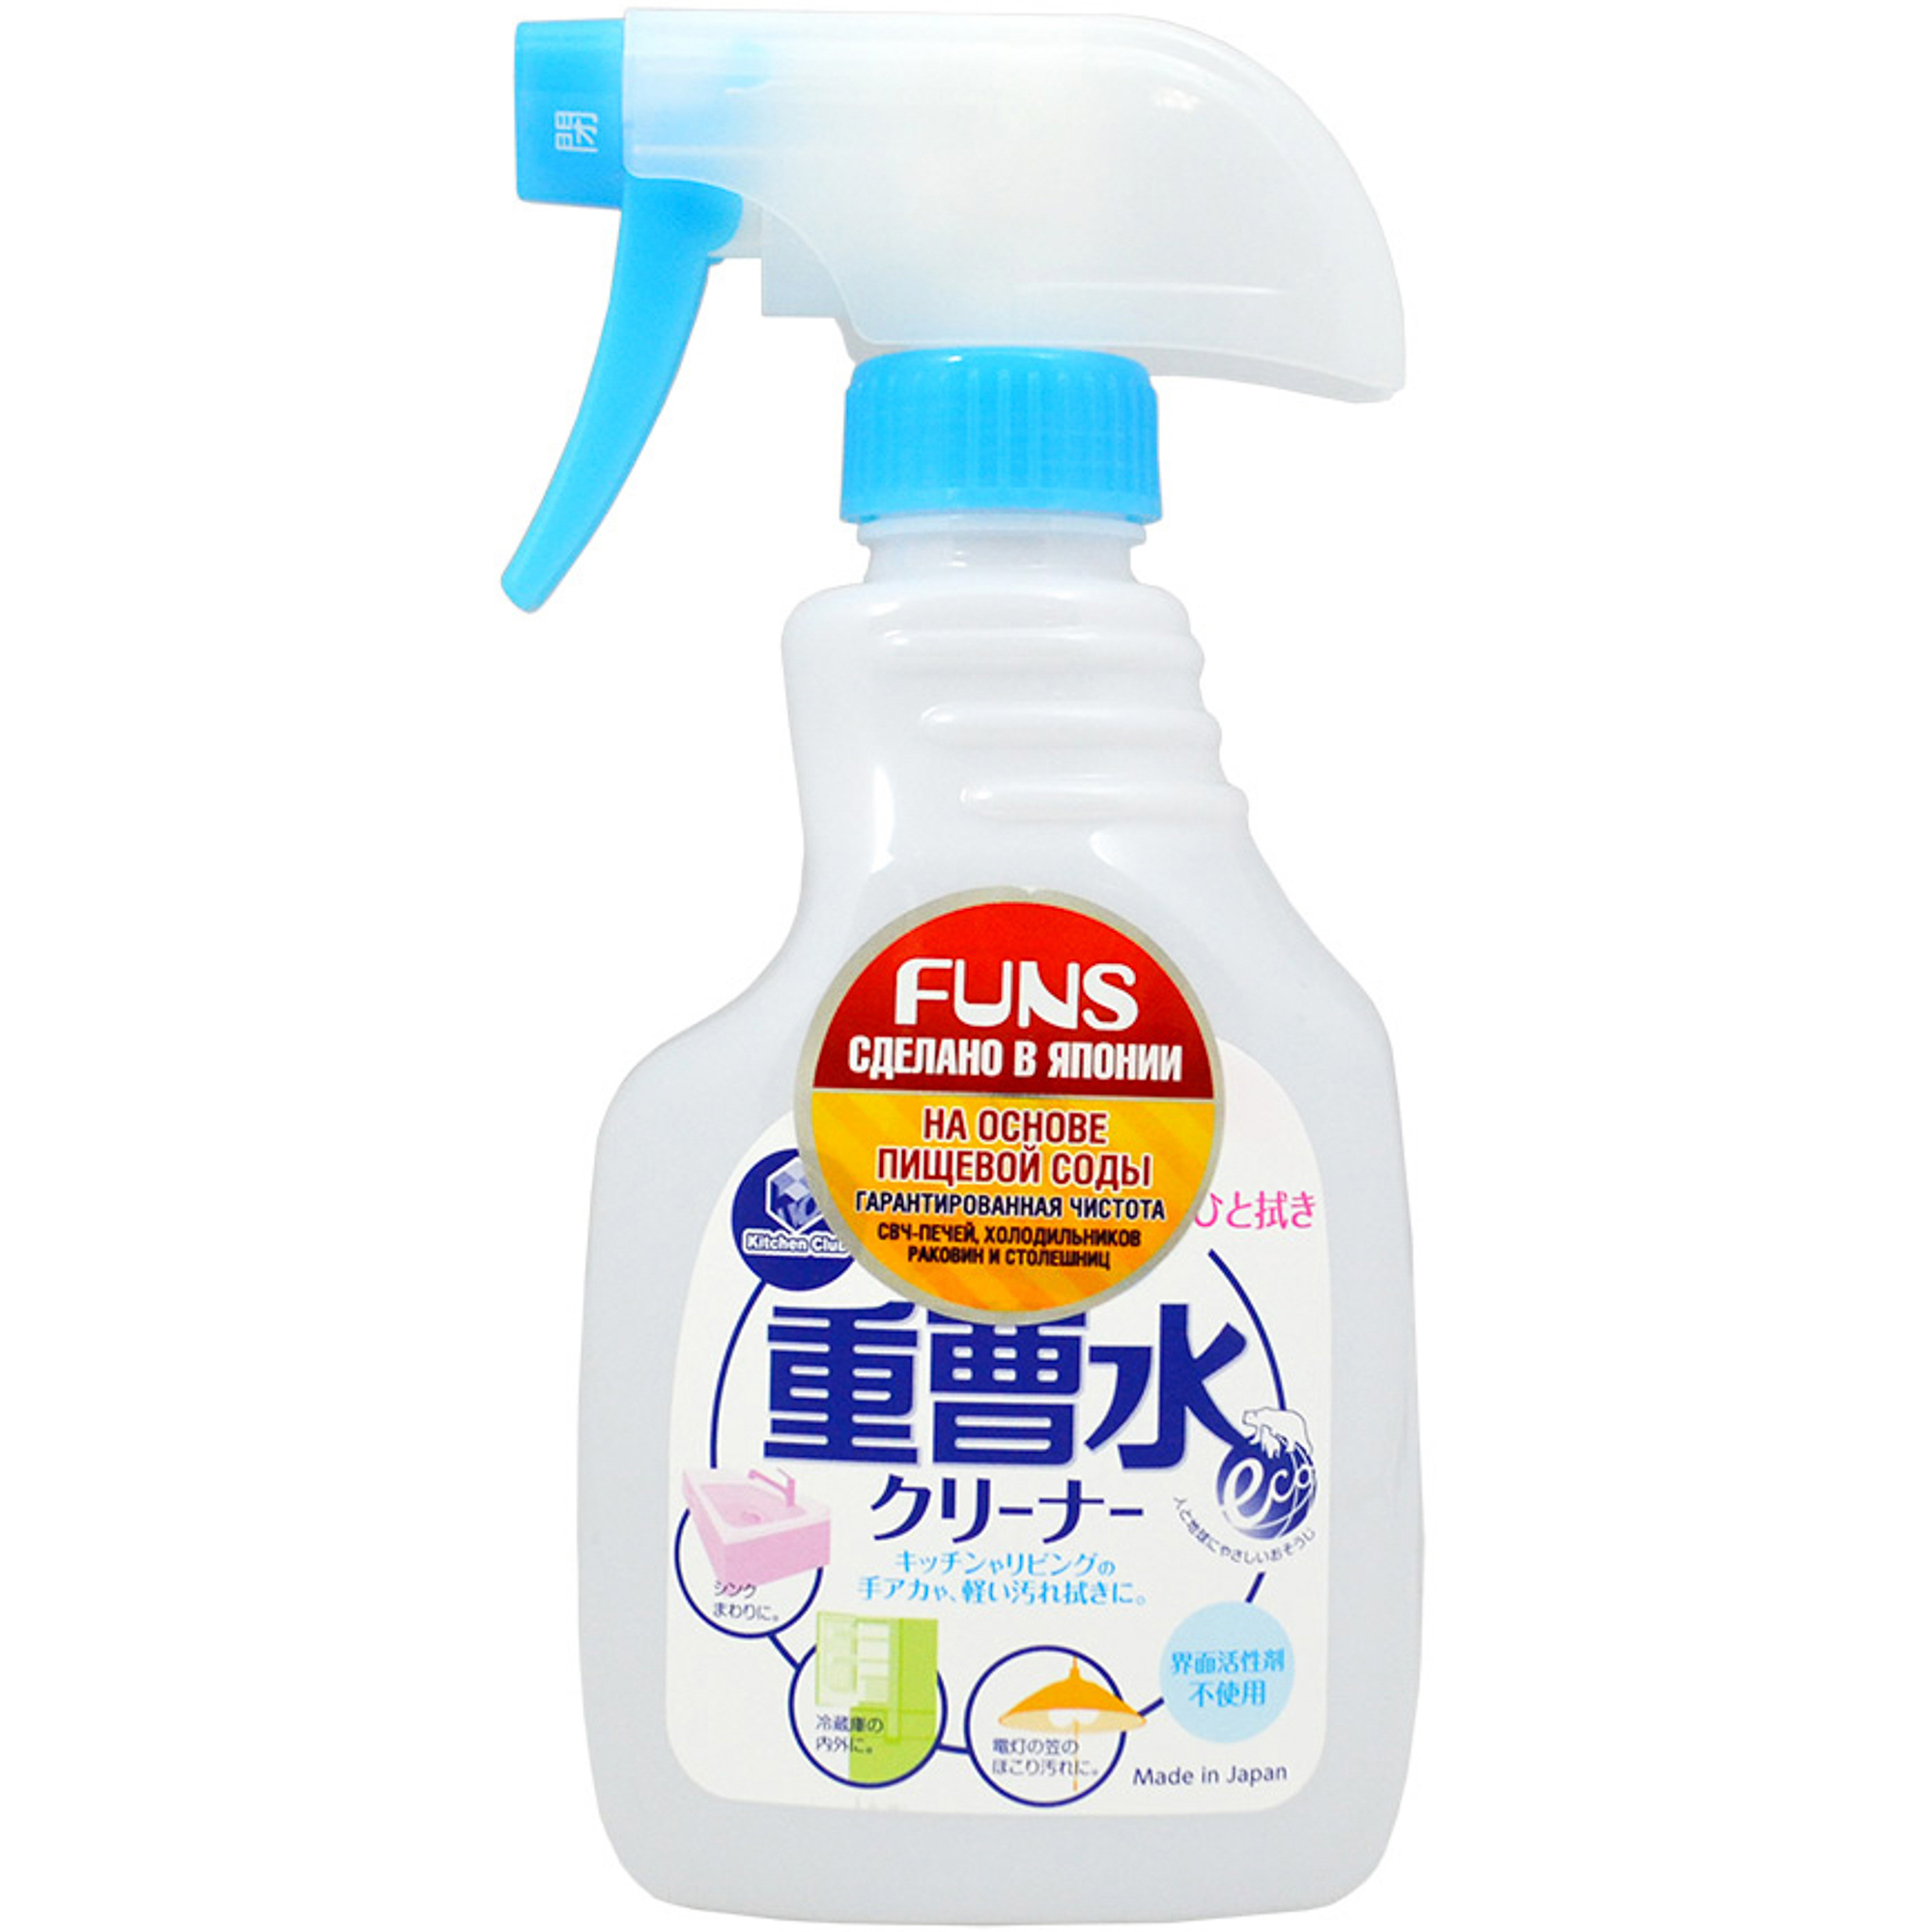 Спрей чистящий для дома FUNS на основе пищевой соды 400 мл чистящее средство для уборки дома